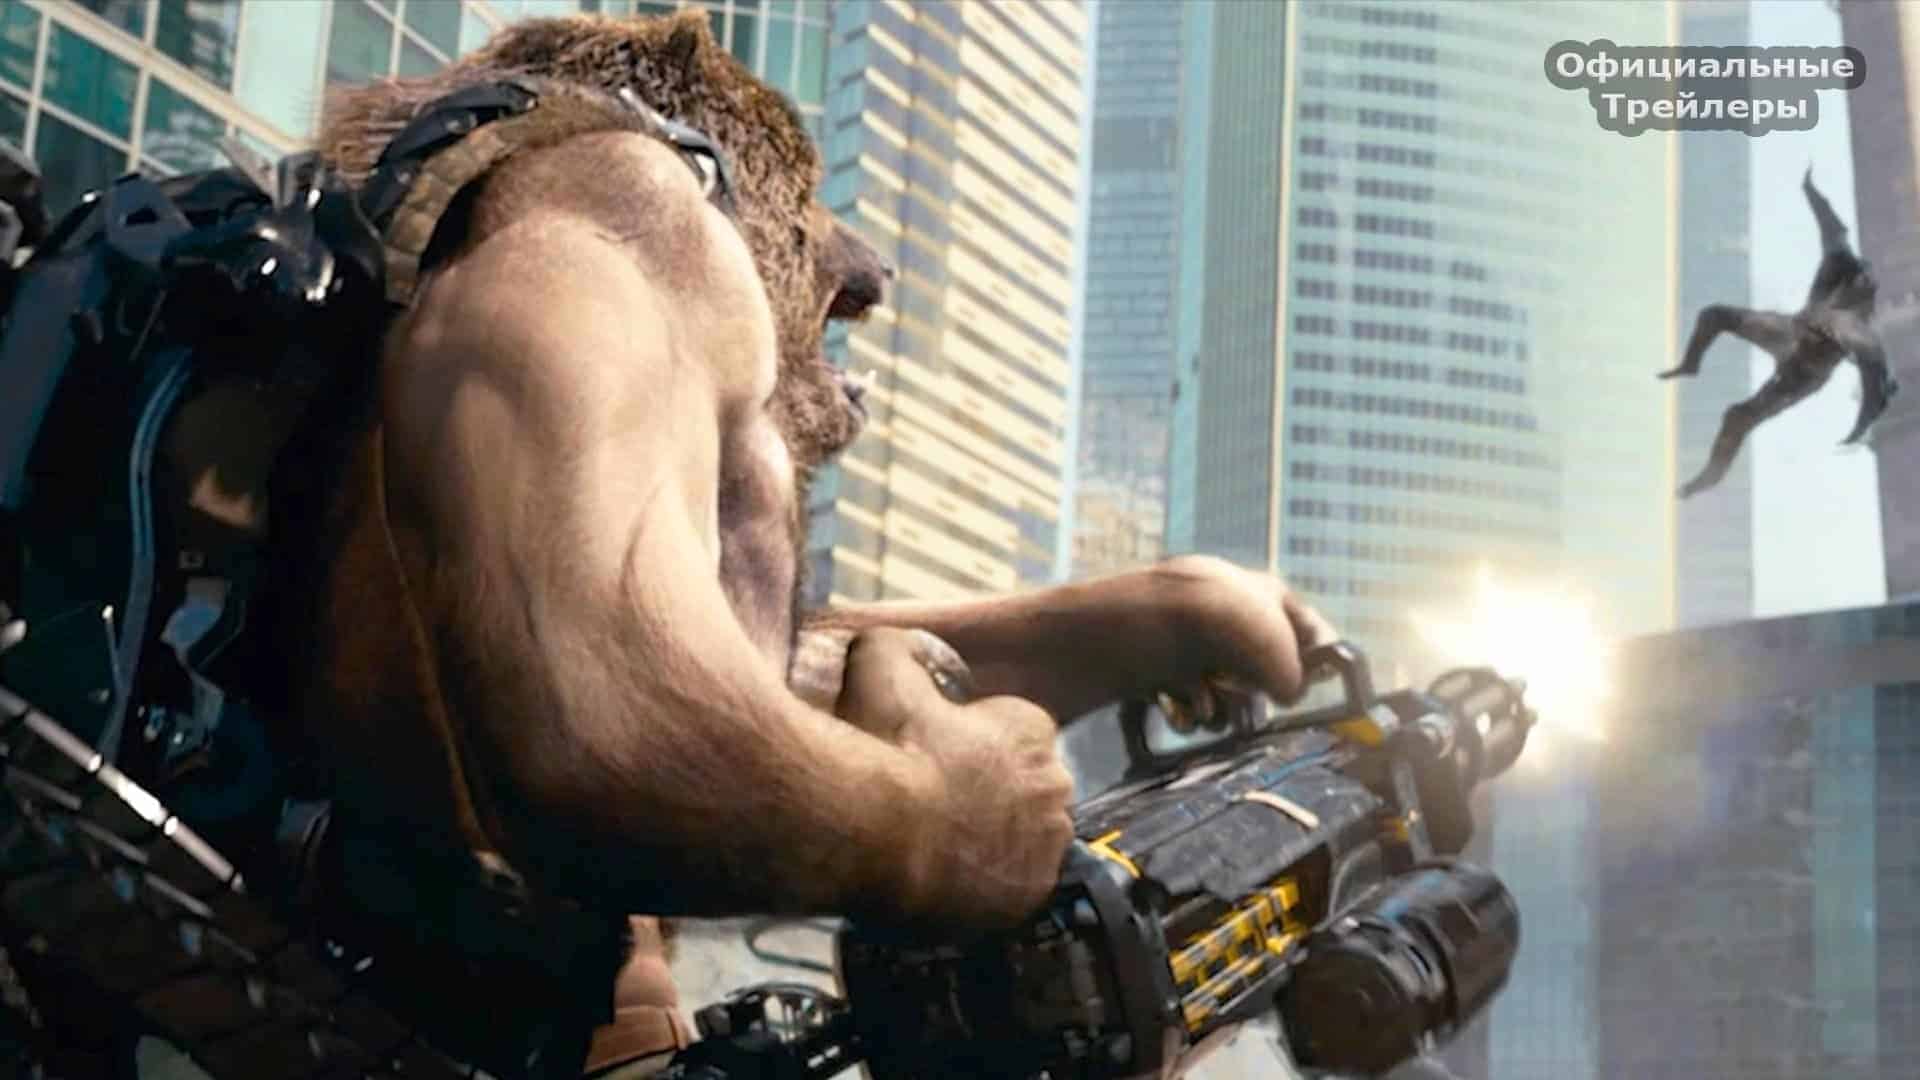 Guardians – Trailer zur russischen Antwort auf Hollywood Superheldenfilme